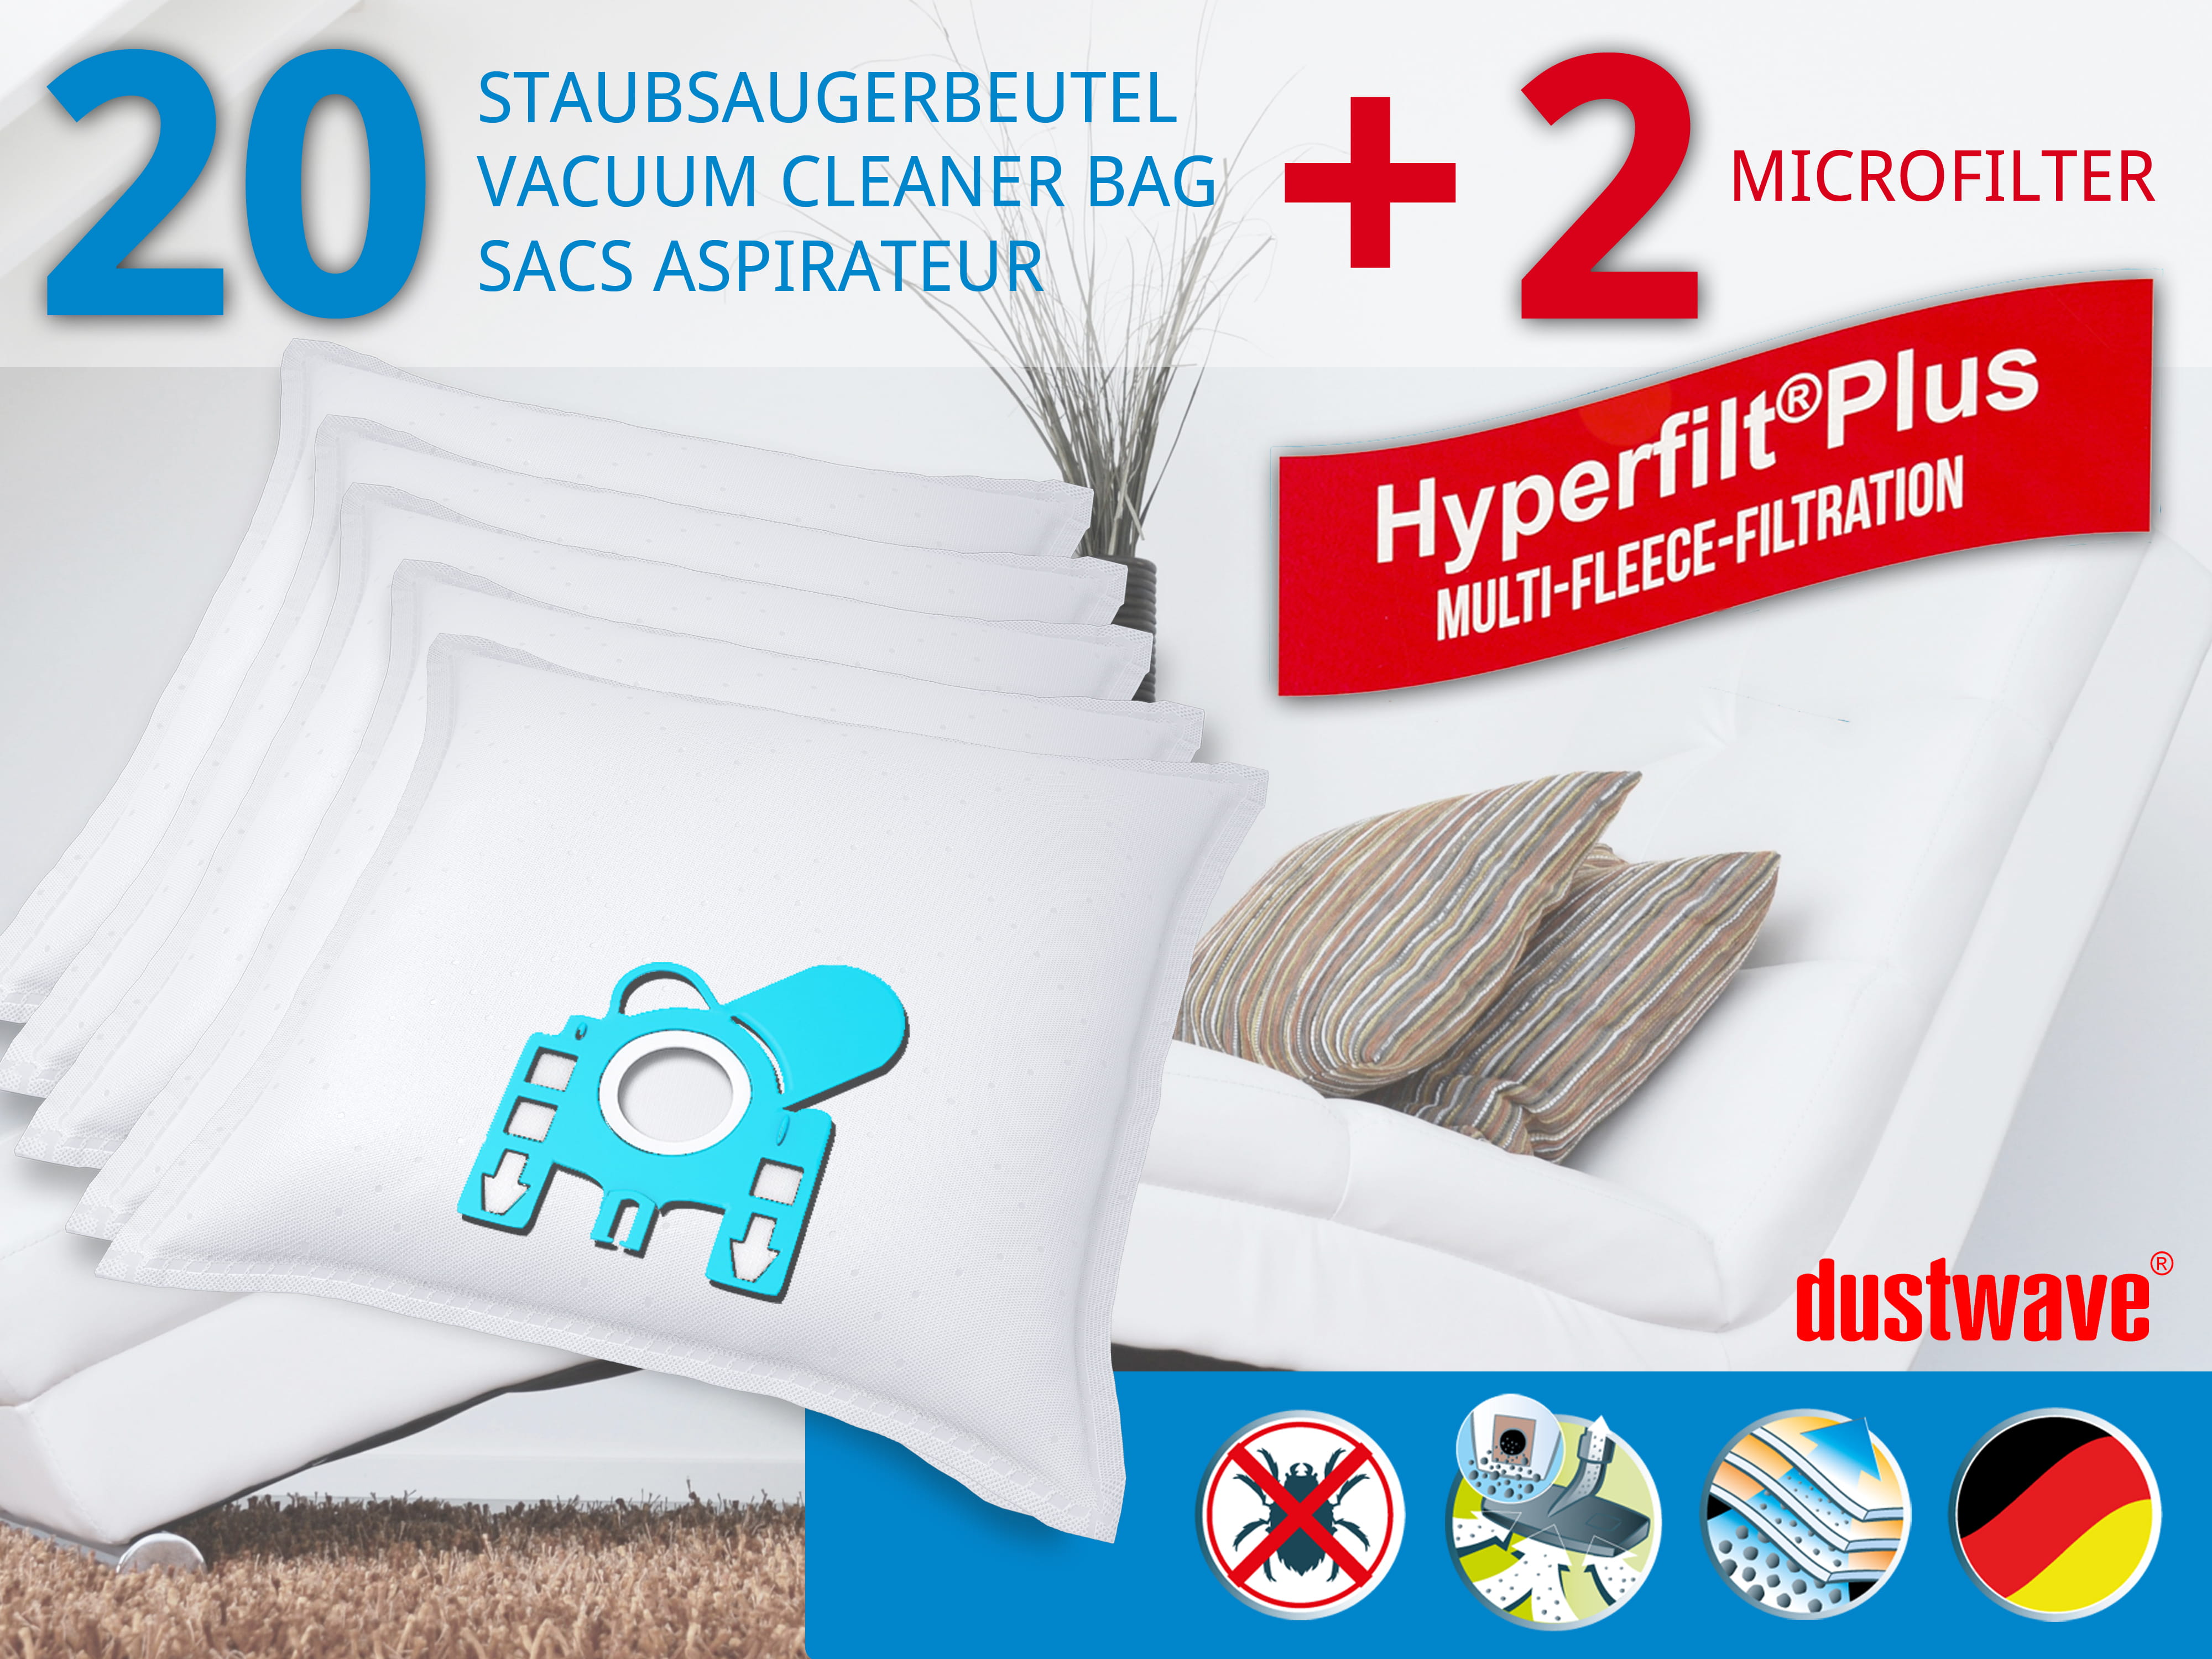 Dustwave® 20 Staubsaugerbeutel für Miele S635 / S 635 - hocheffizient, mehrlagiges Mikrovlies mit Hygieneverschluss - Made in Germany